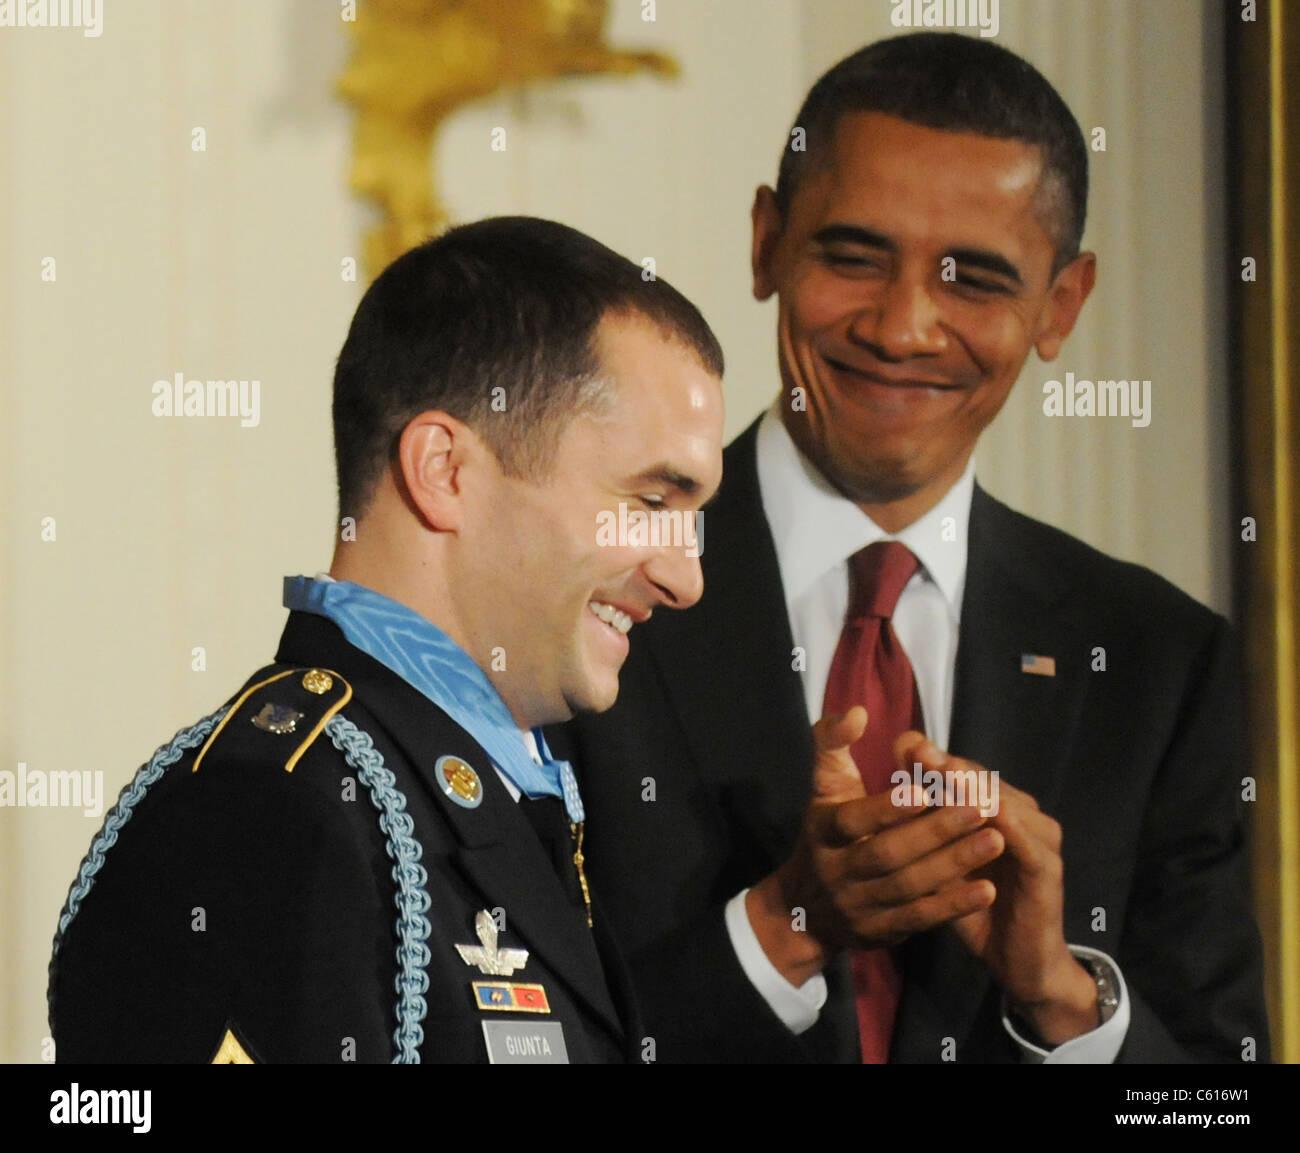 Il presidente Obama applaude dopo aver presentato la medaglia d'onore al personale il sergente Salvatore Giunta su nov. 16 2010. Giunta è il primo recipent superstite del più alto U.S. Decorazione Miltary poiché il Vietman guerra. (BSWH 2011 8 31) Foto Stock